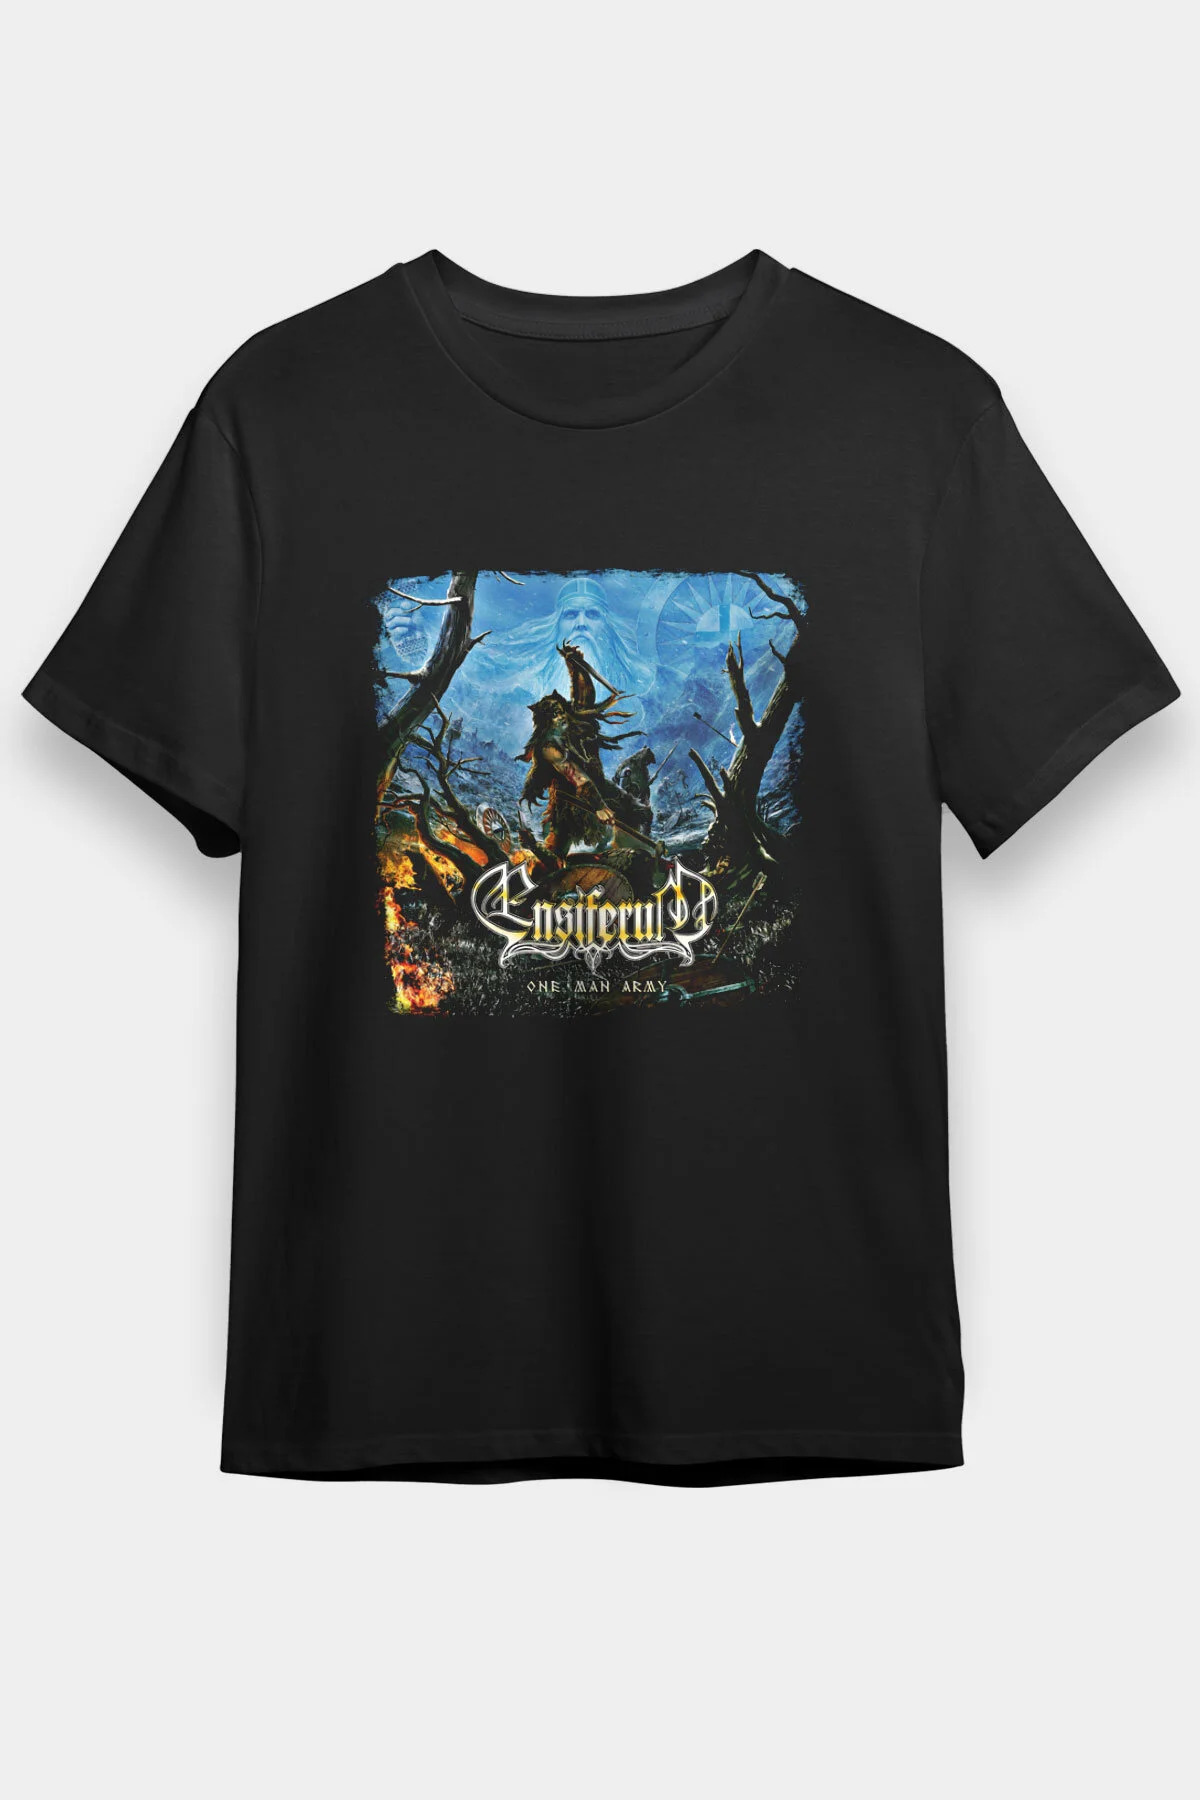 Ensiferum  T shirt , Music Band ,Unisex Tshirt 10/